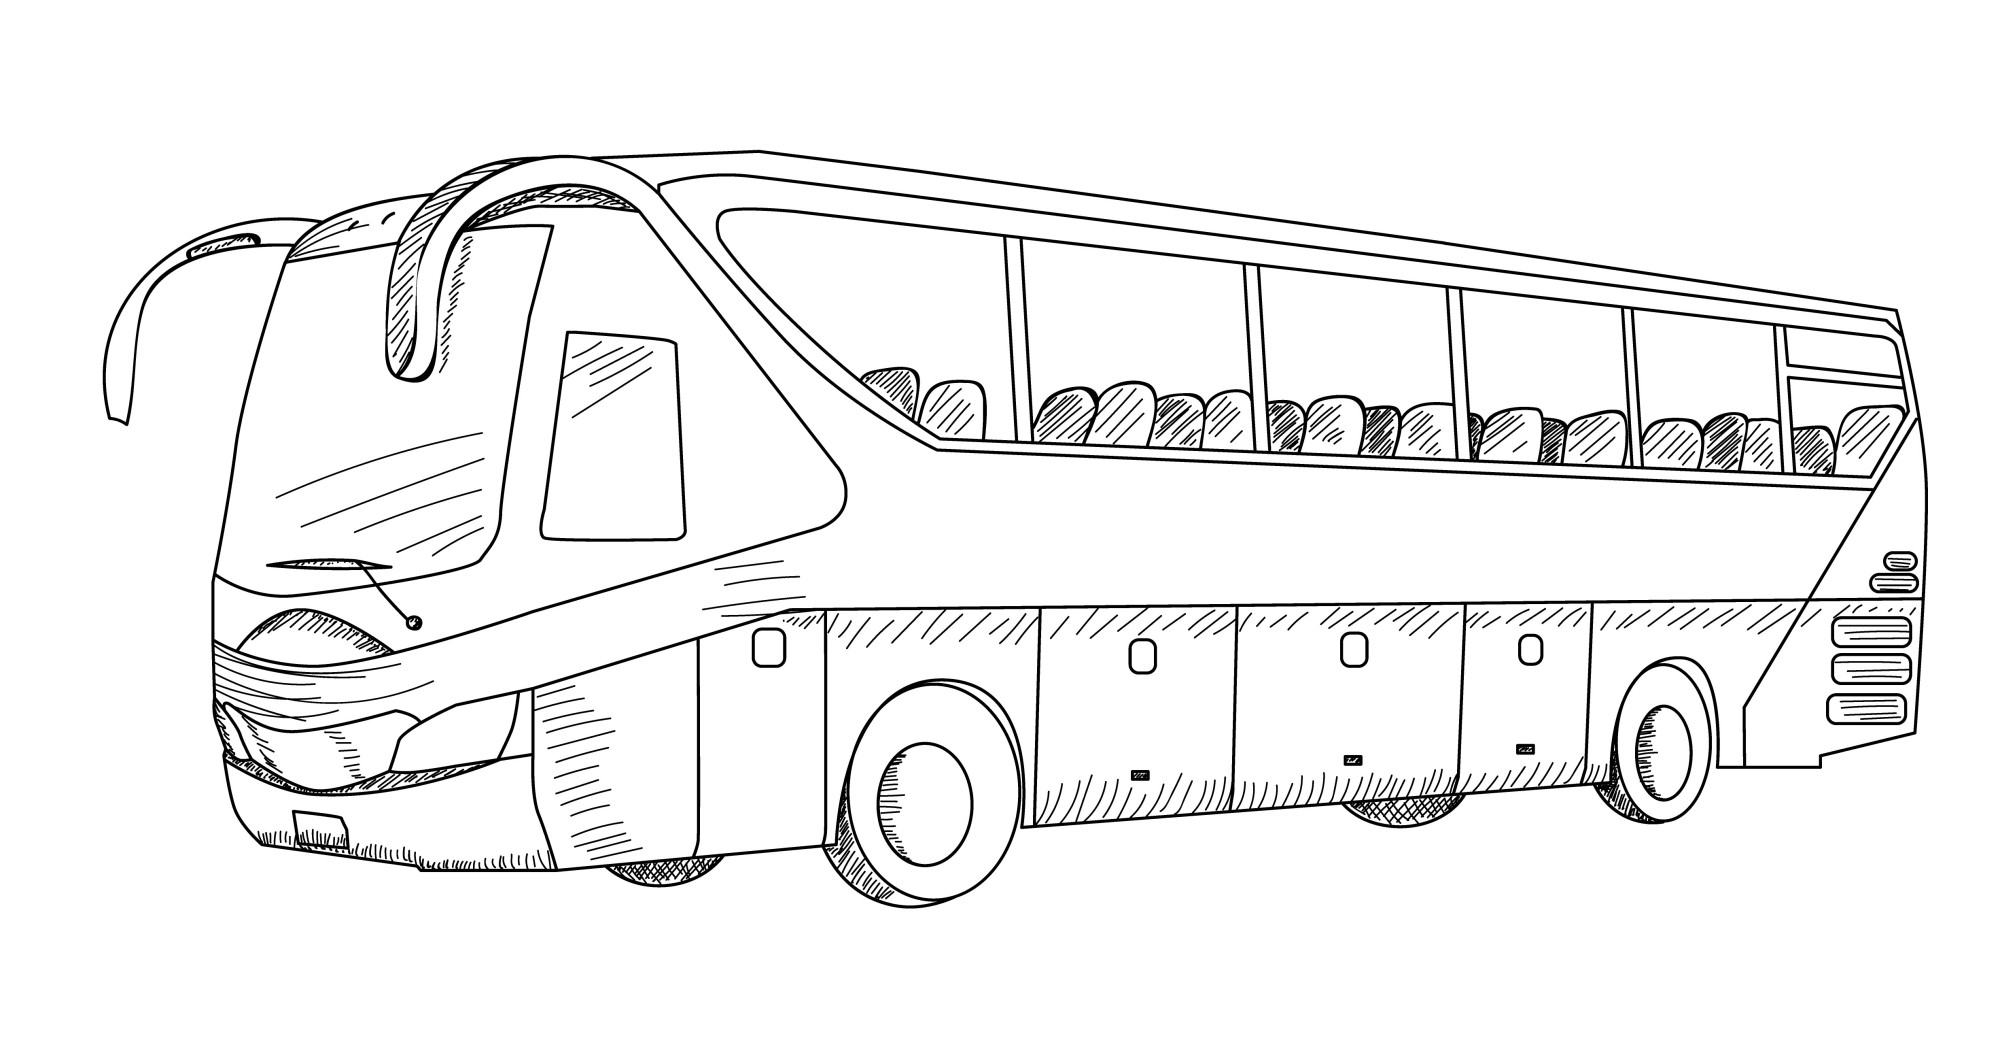 Раскраска для детей: комфортный экскурсионный автобус